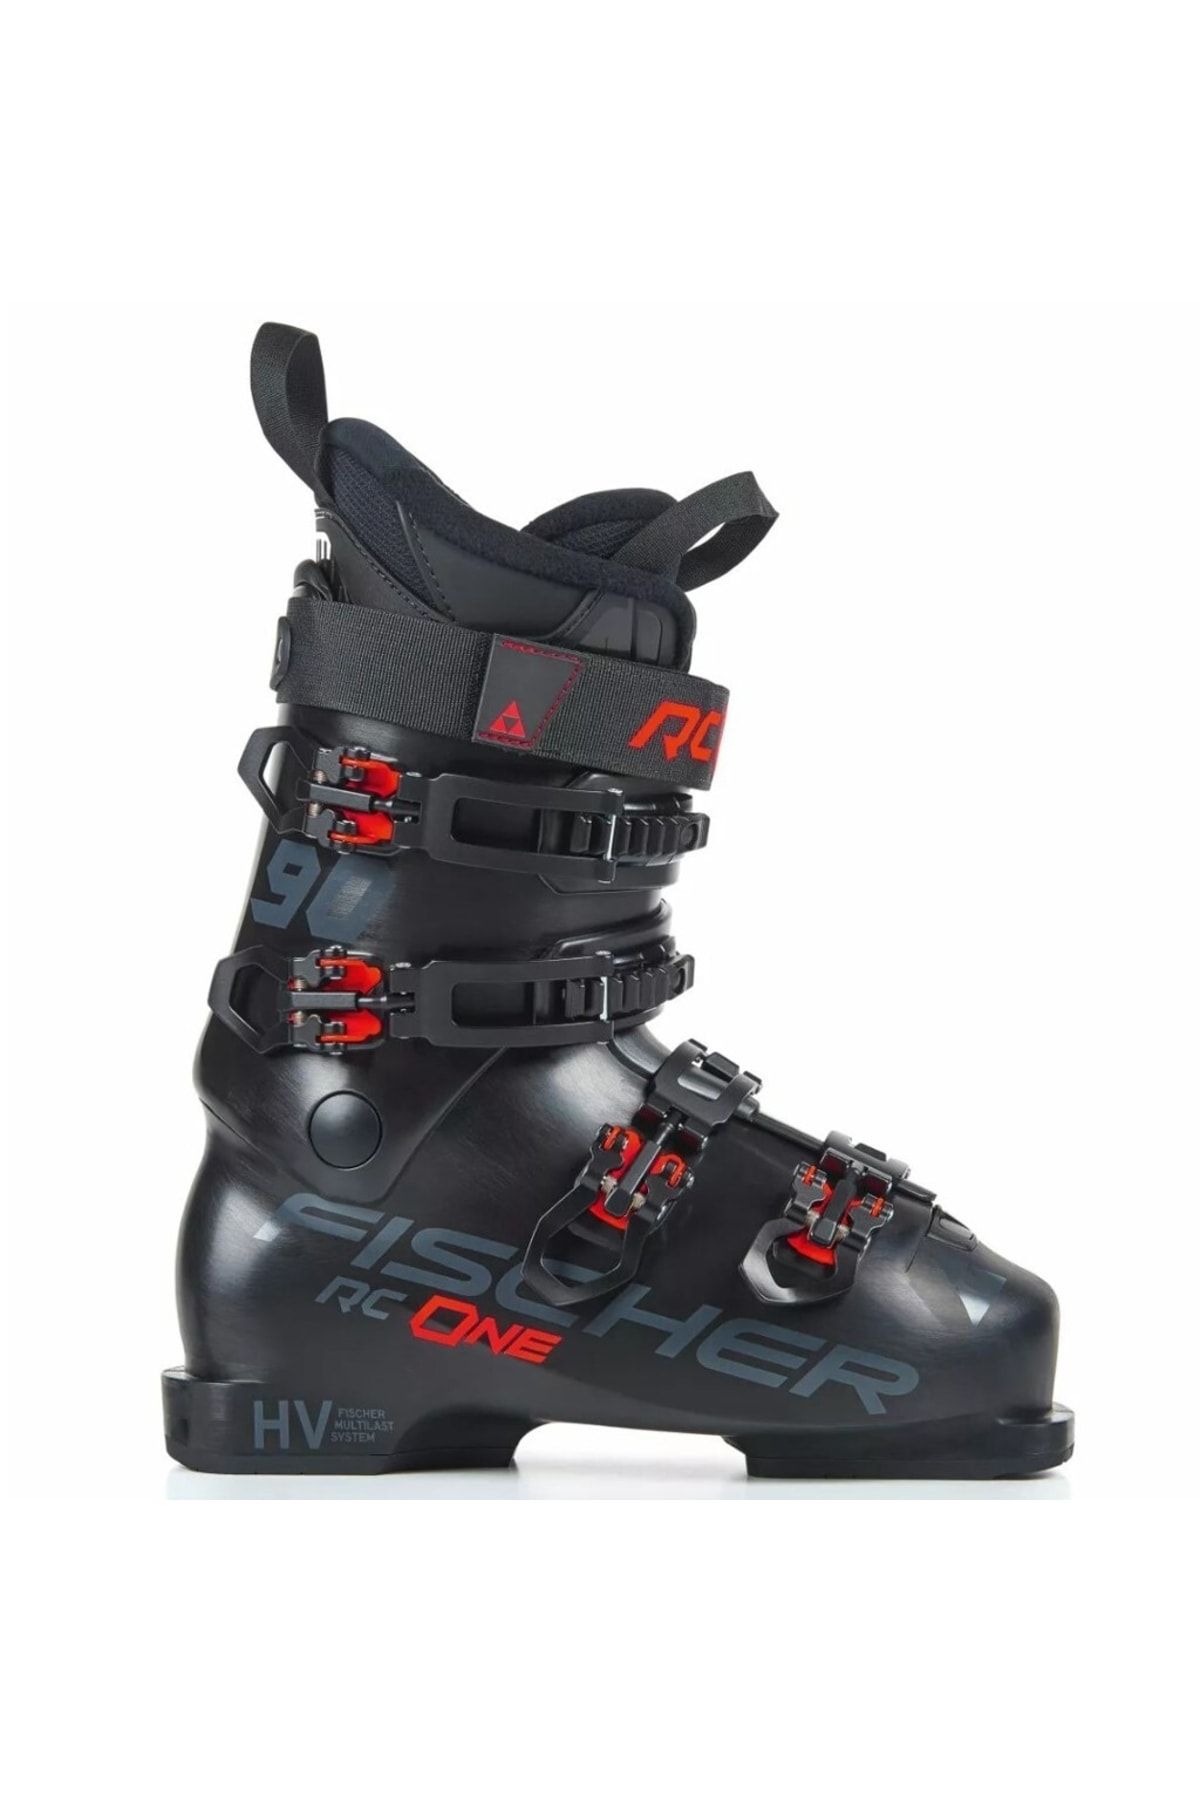 Fischer Rc One 9.0 Kayak Ayakkabısı